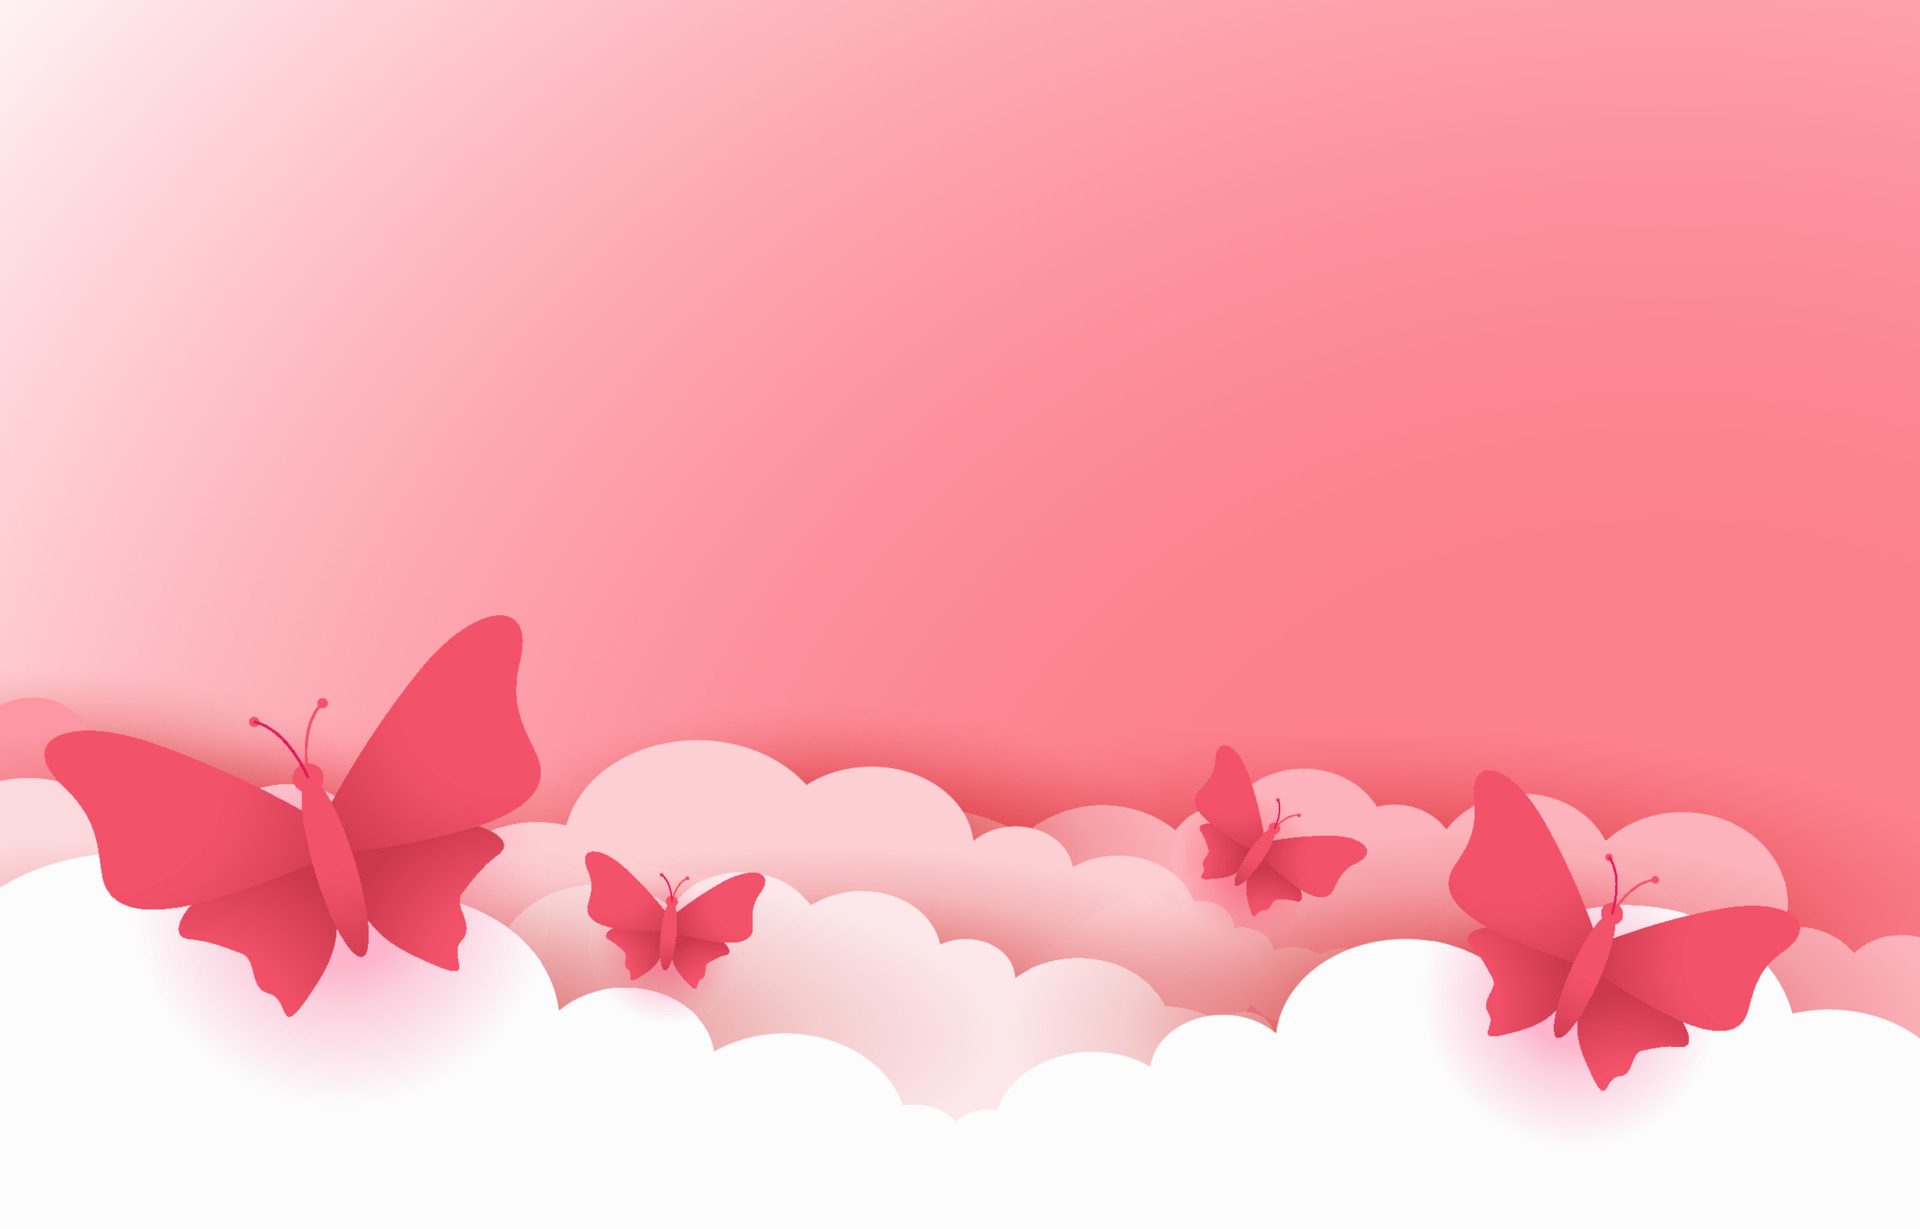 Nền hồng đẹp với mây và bướm sẽ khiến trái tim bạn tan chảy! Những mây trắng xóa và bướm đang bay lượn trên nền hồng nhẹ nhàng, tạo nên một không gian đẹp mê hồn. Không chỉ trang trí cho chiếc điện thoại của bạn, mà chúng còn là nguồn cảm hứng tuyệt vời cho những dự án thiết kế của bạn.